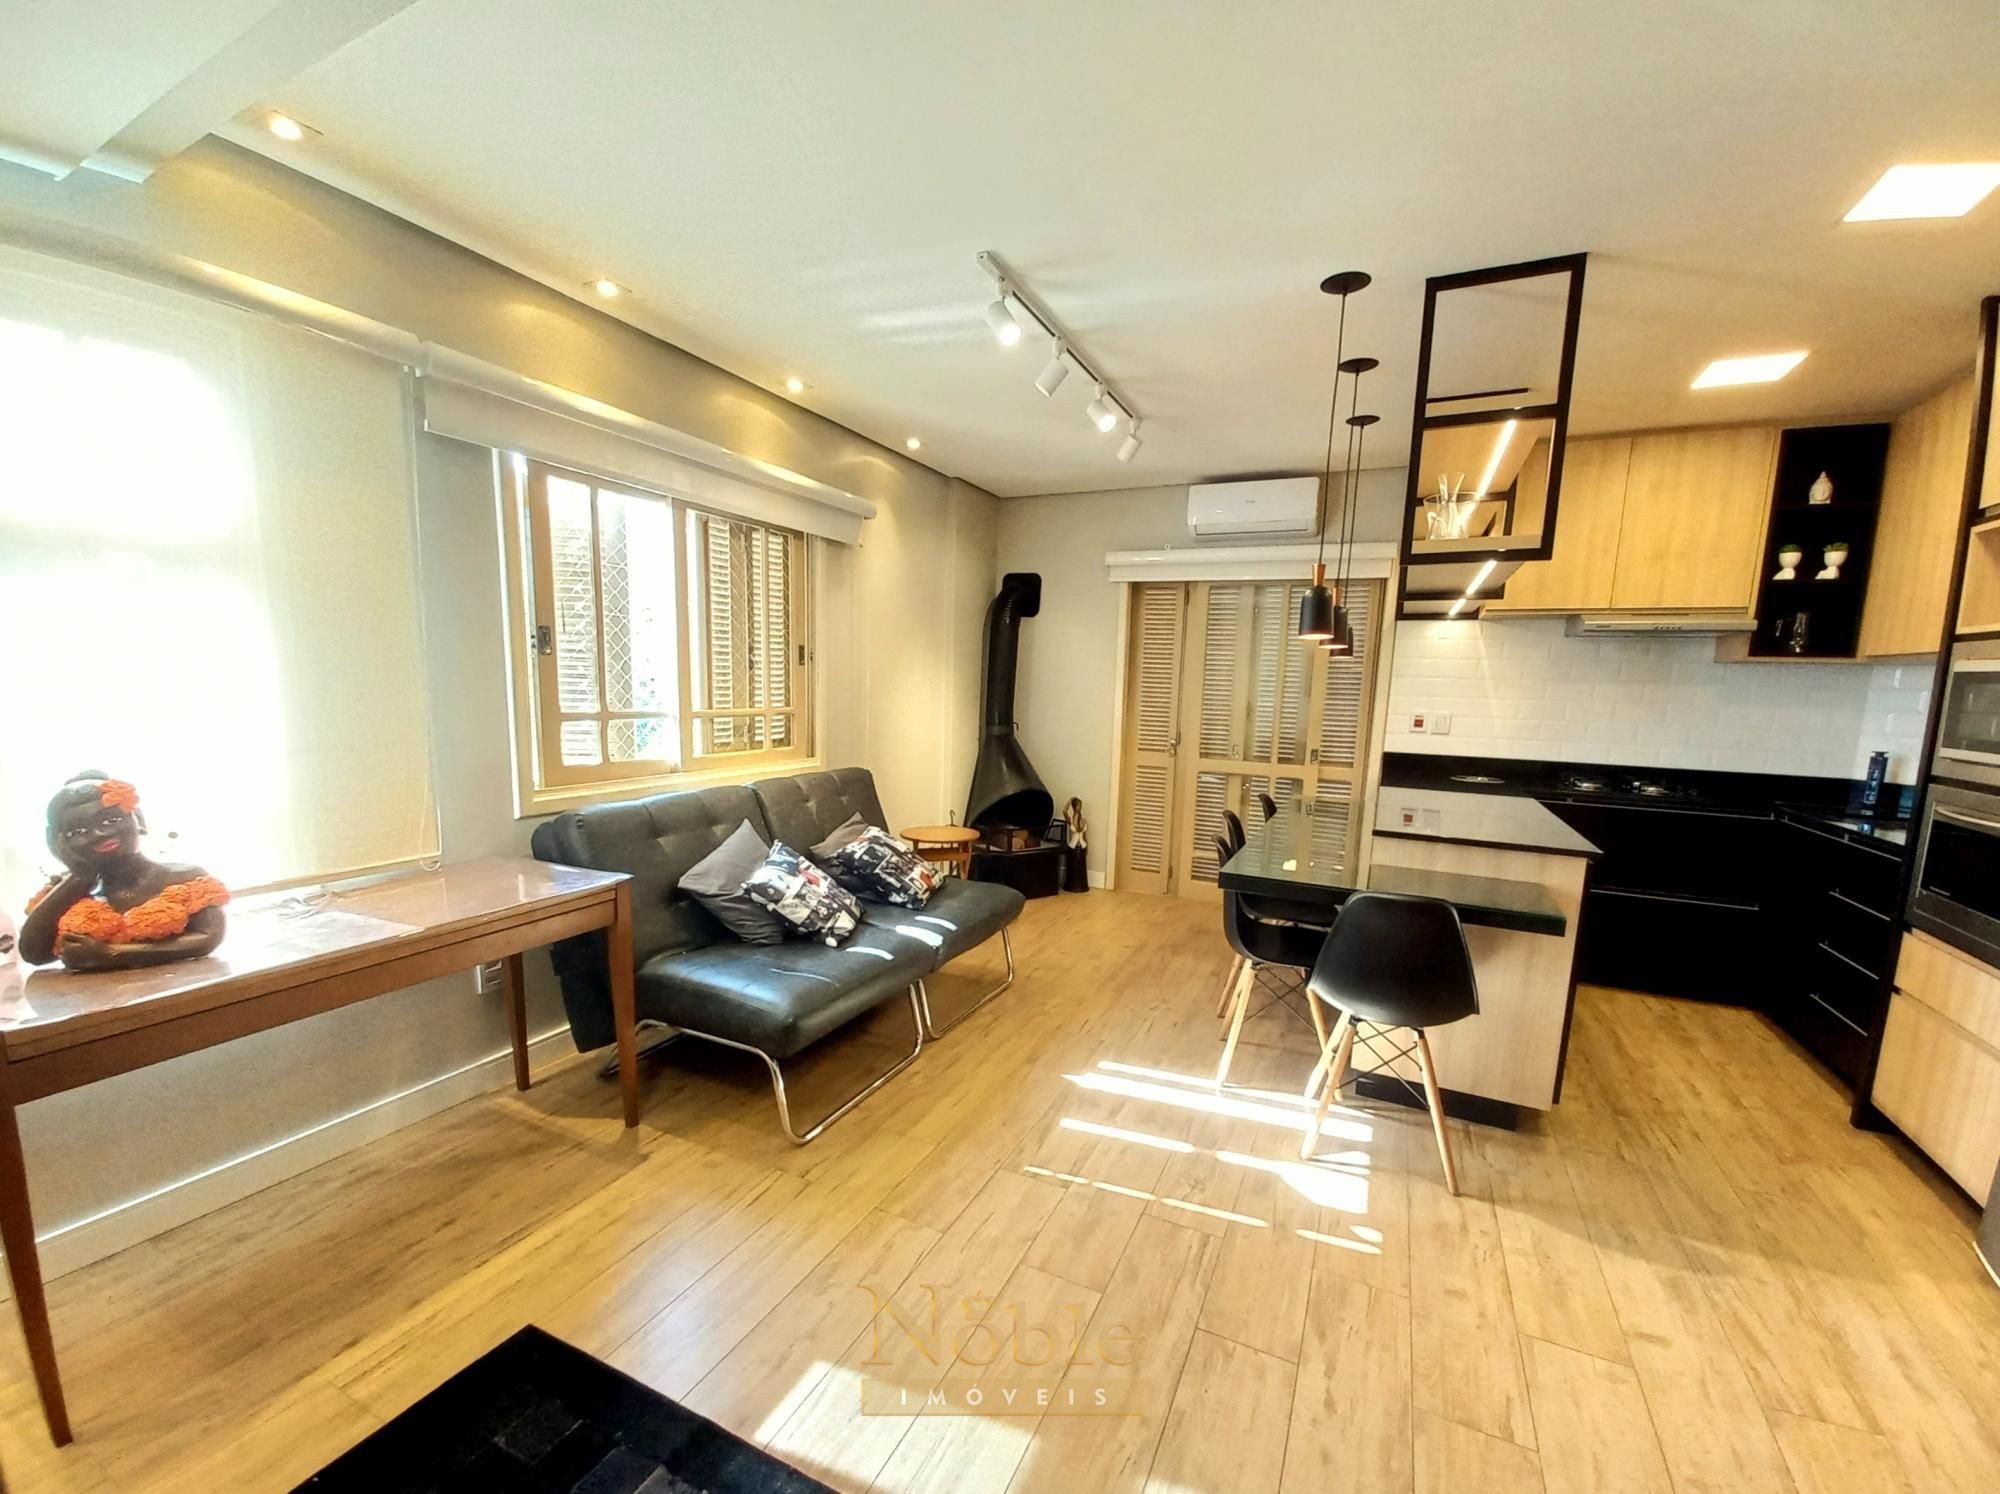 Apartamento com 50m², 1 dormitório no Morada da Lagoa em Torres para Comprar